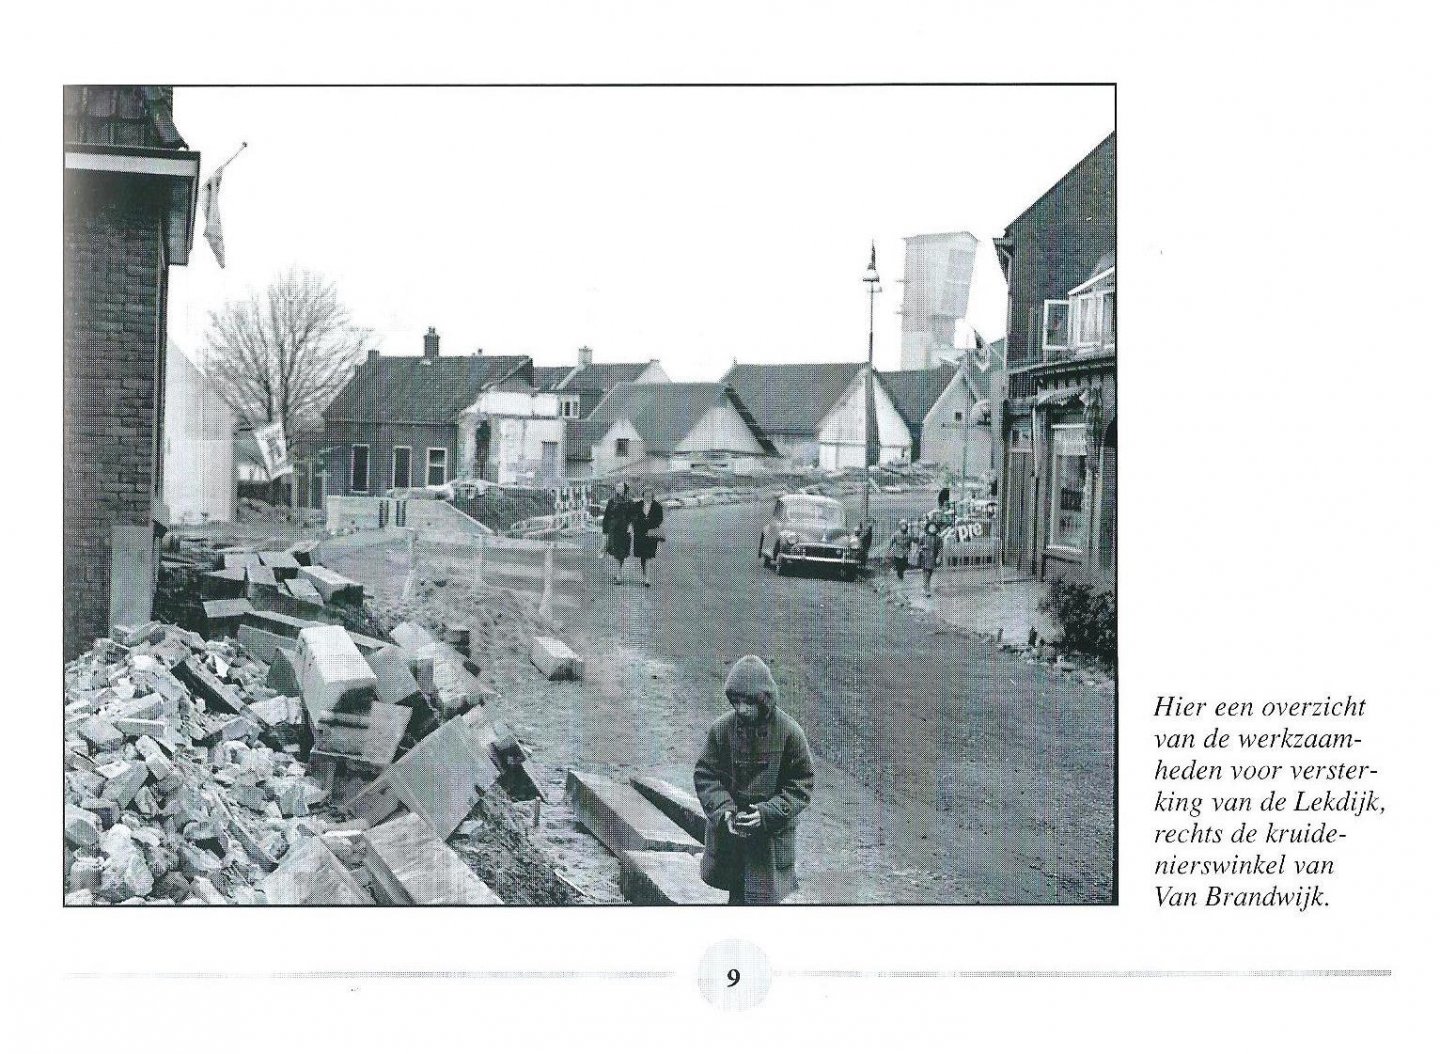 Liedorp, Adri - Krimpen in de jaren zestig : een beeld van Krimpen aan den IJssel 1960-1970